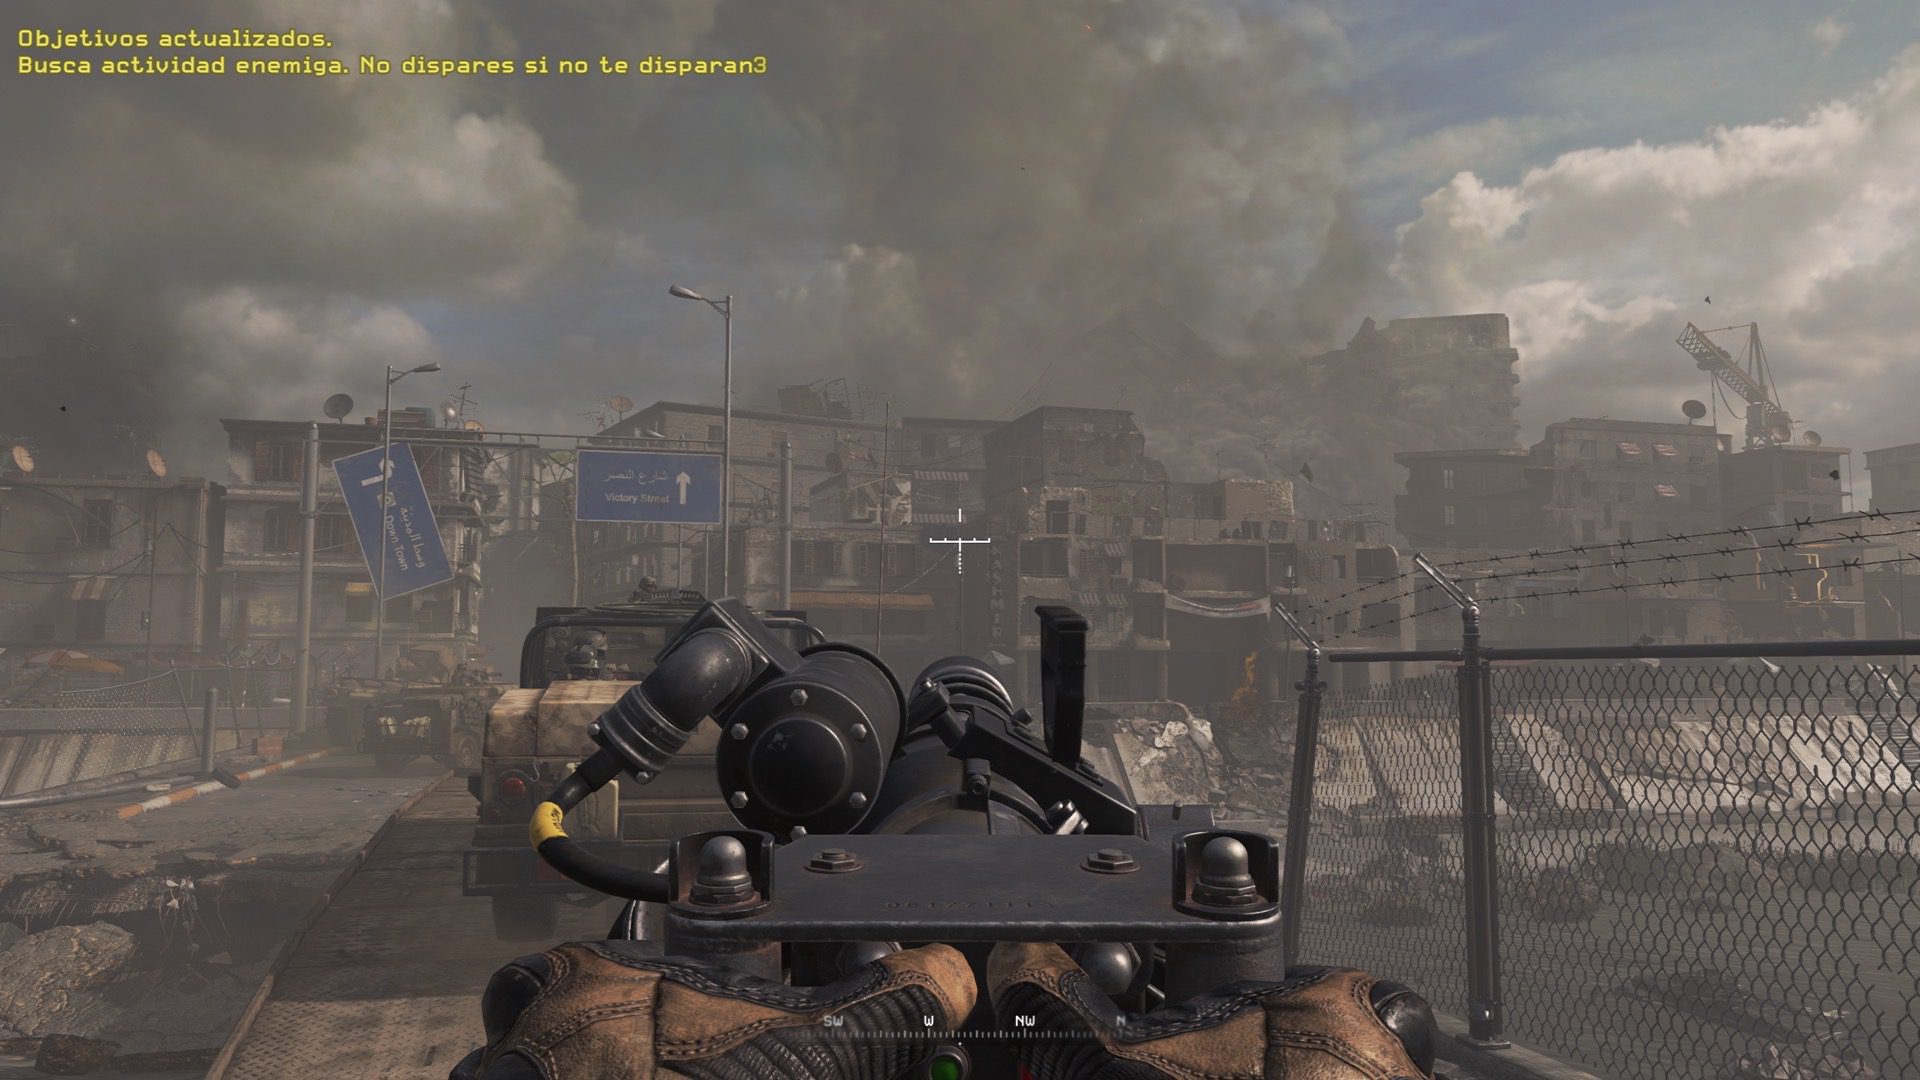 Análisis de Call of Duty Modern Warfare 2 Remastered - Posiblemente la campaña más épica de todos los tiempos. Analizamos Call of Duty Modern Warfare 2 Remastered.